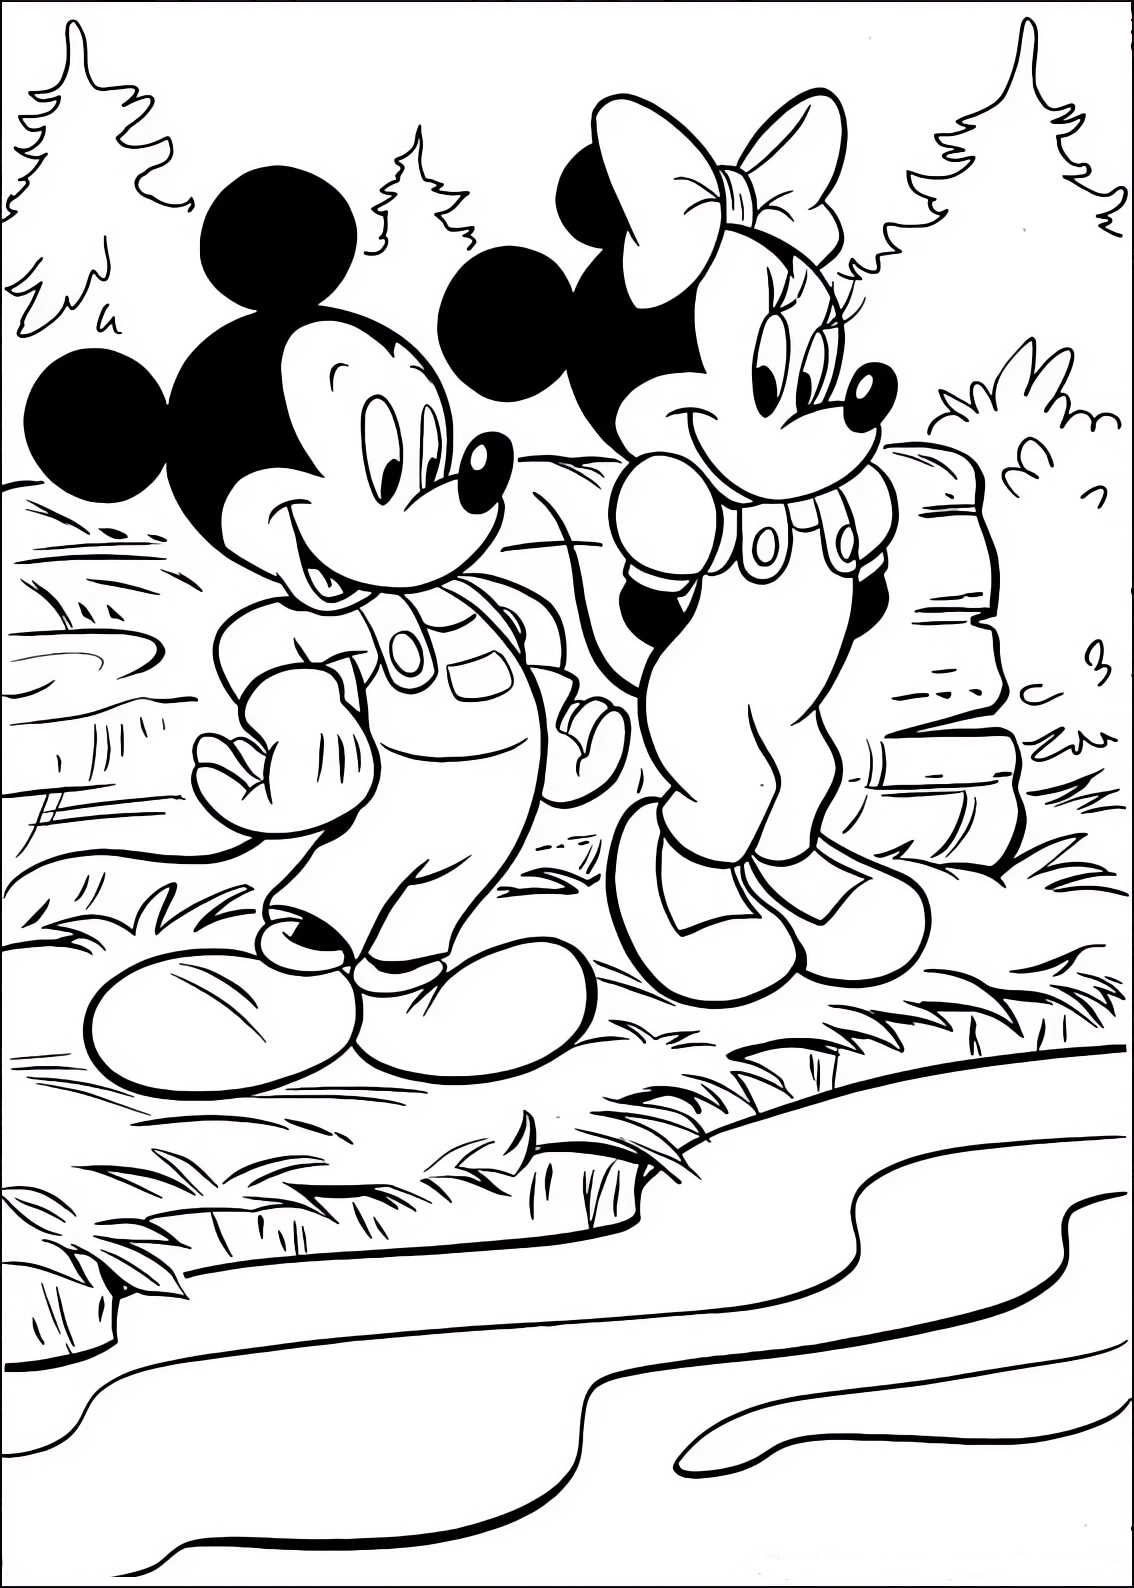 Disegno da colorare di Minnie e Topolino (Mickey Mouse) al fiume